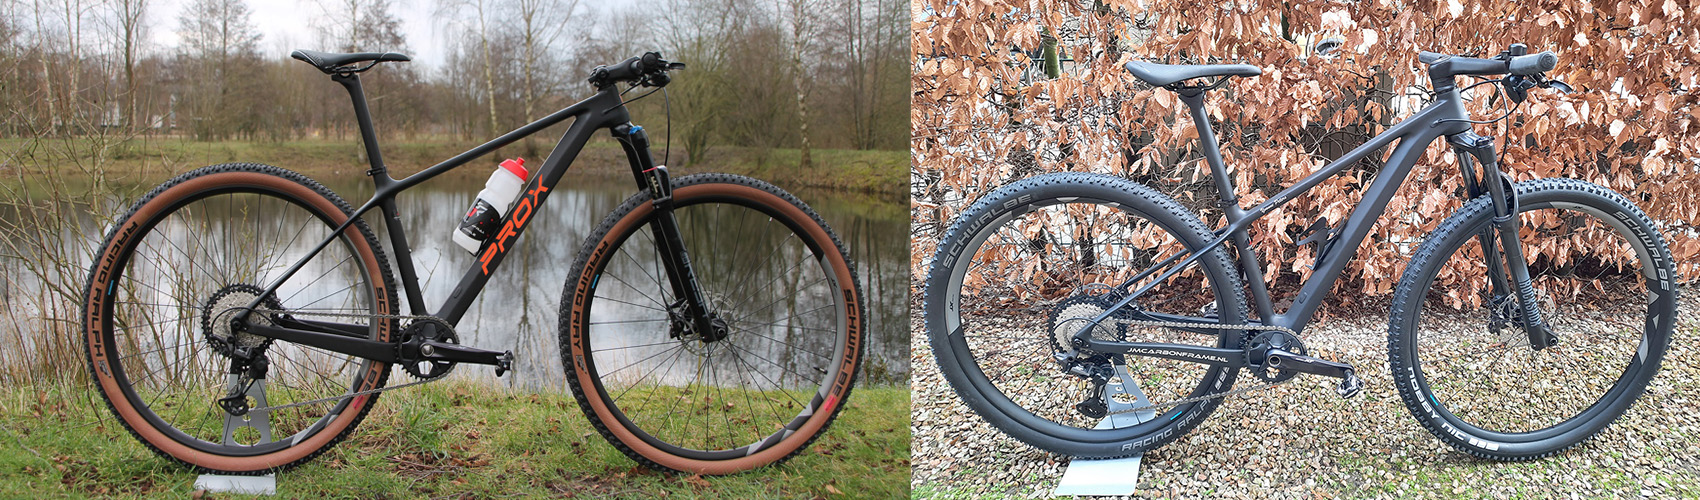 bici complete costruite con telaio in carbonio hardtail PXM909